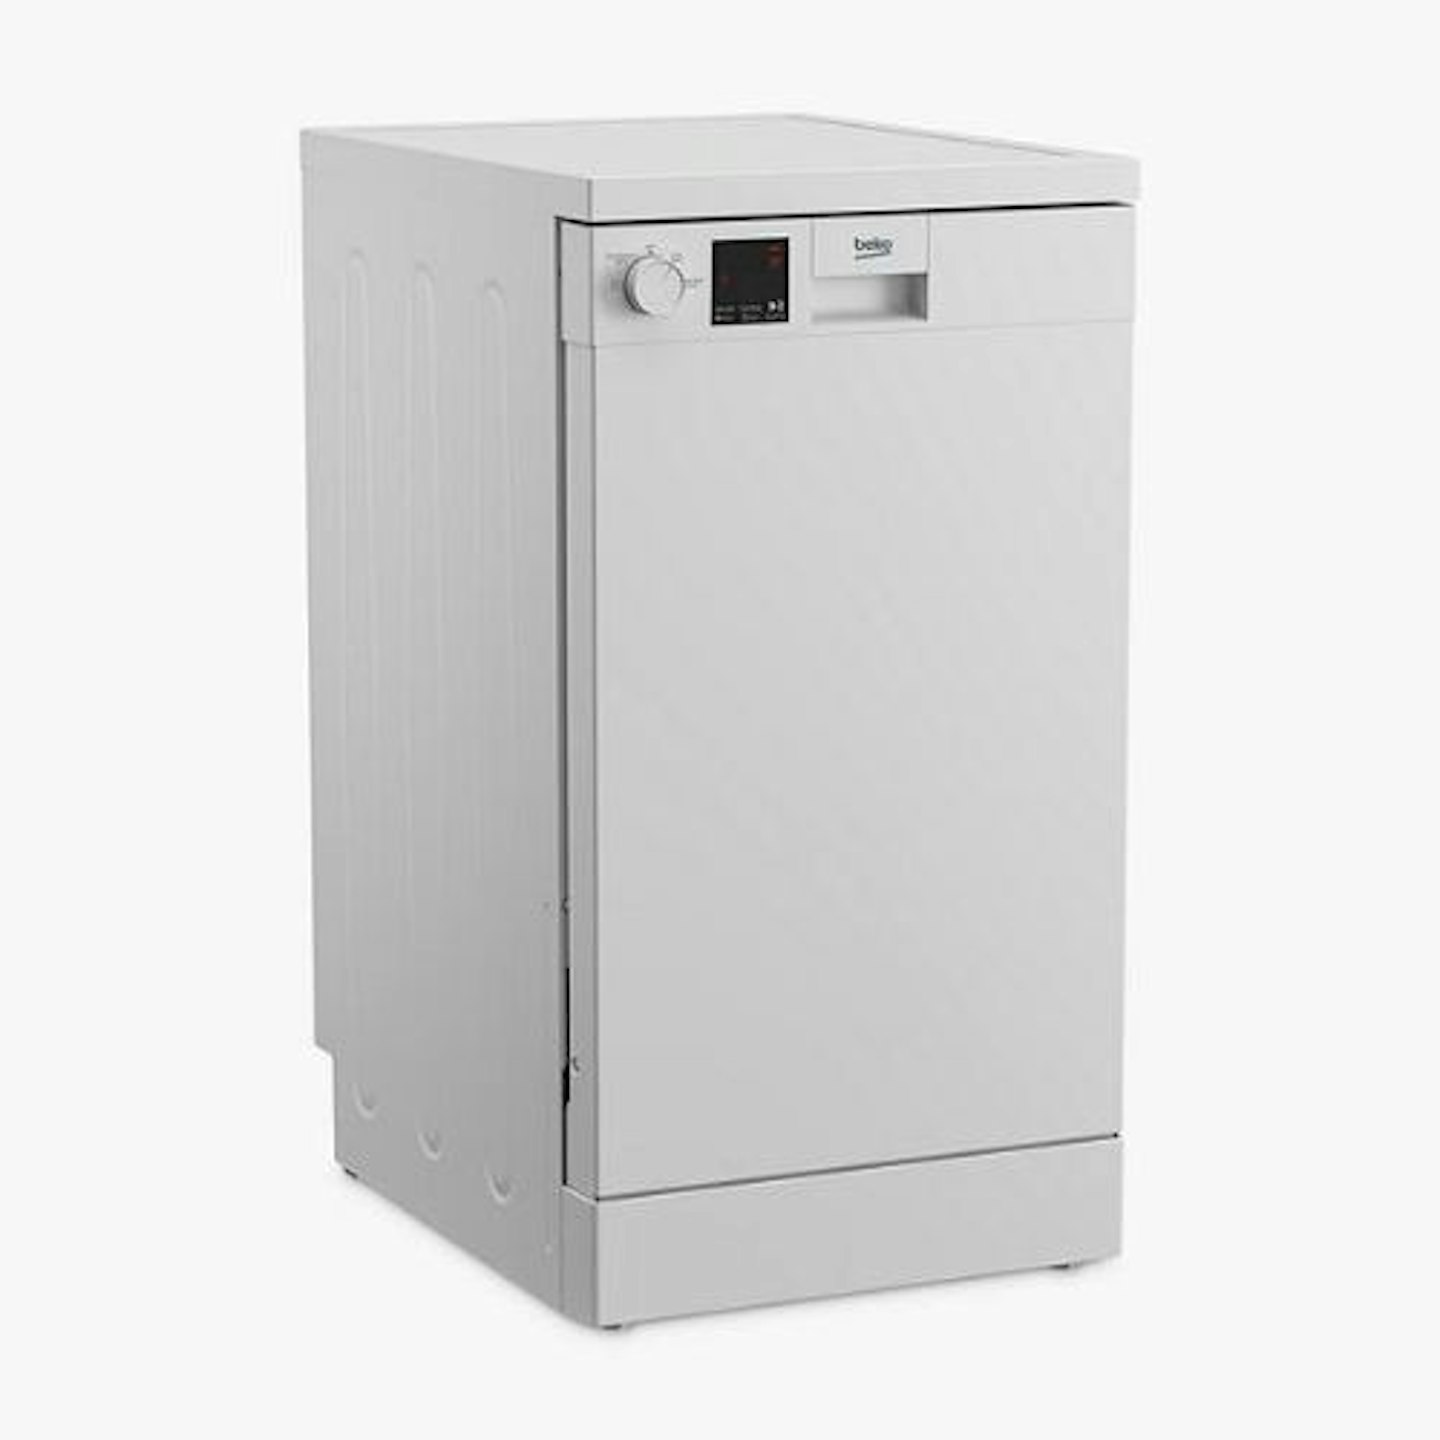 Beko DVS04X20X Slimline Dishwasher